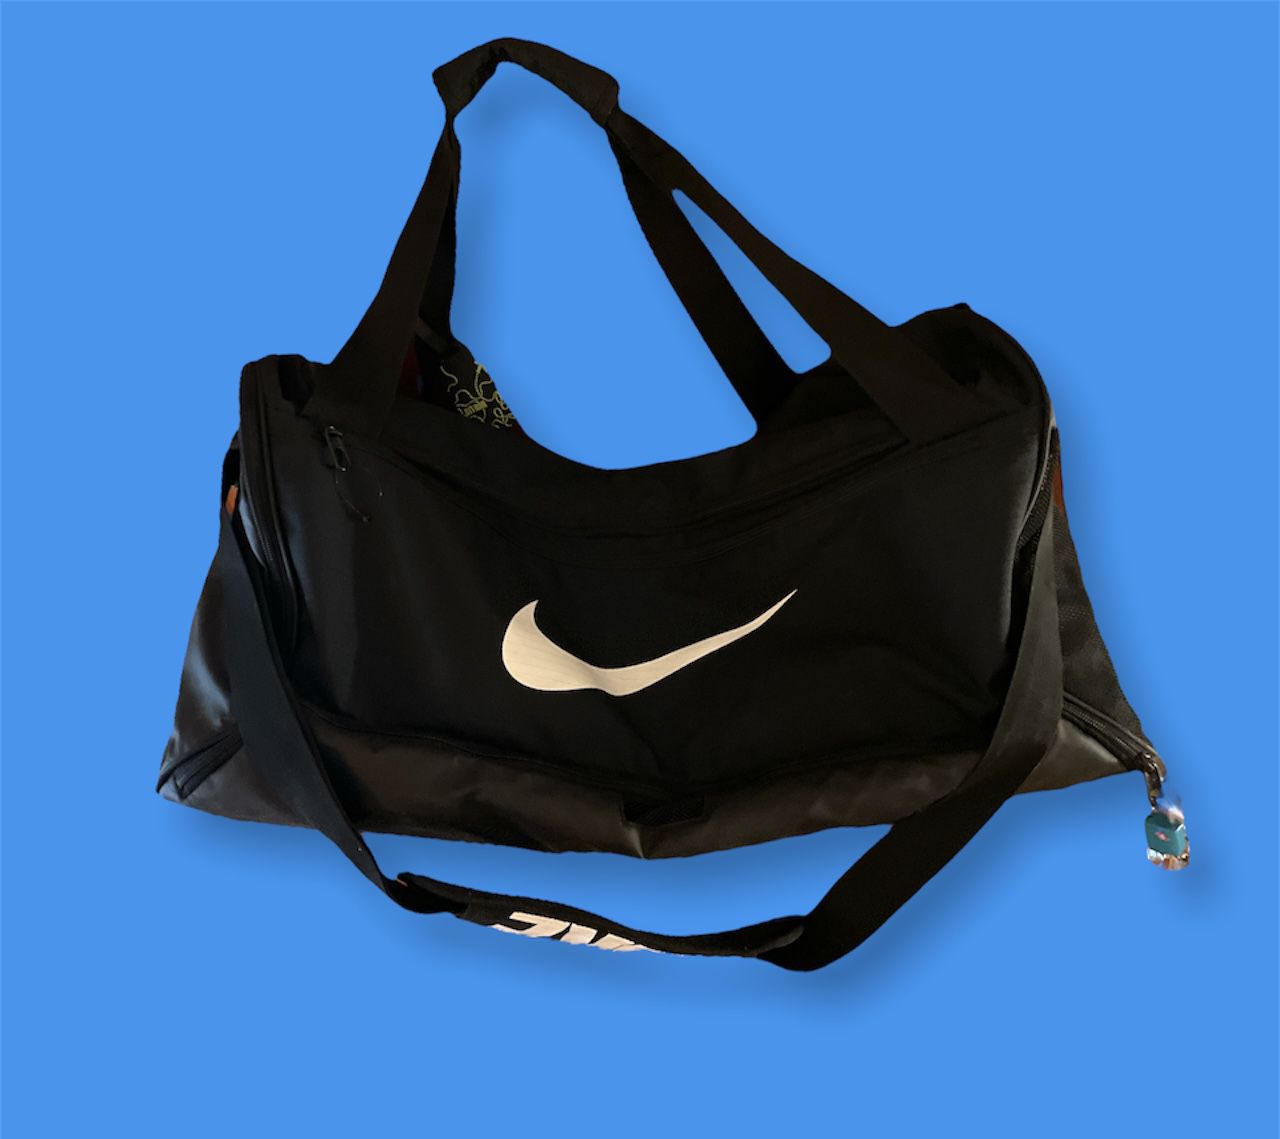 Nike Duffle Gym Bag Large 25” Black Padded Shoulder Strap Handles & Tag